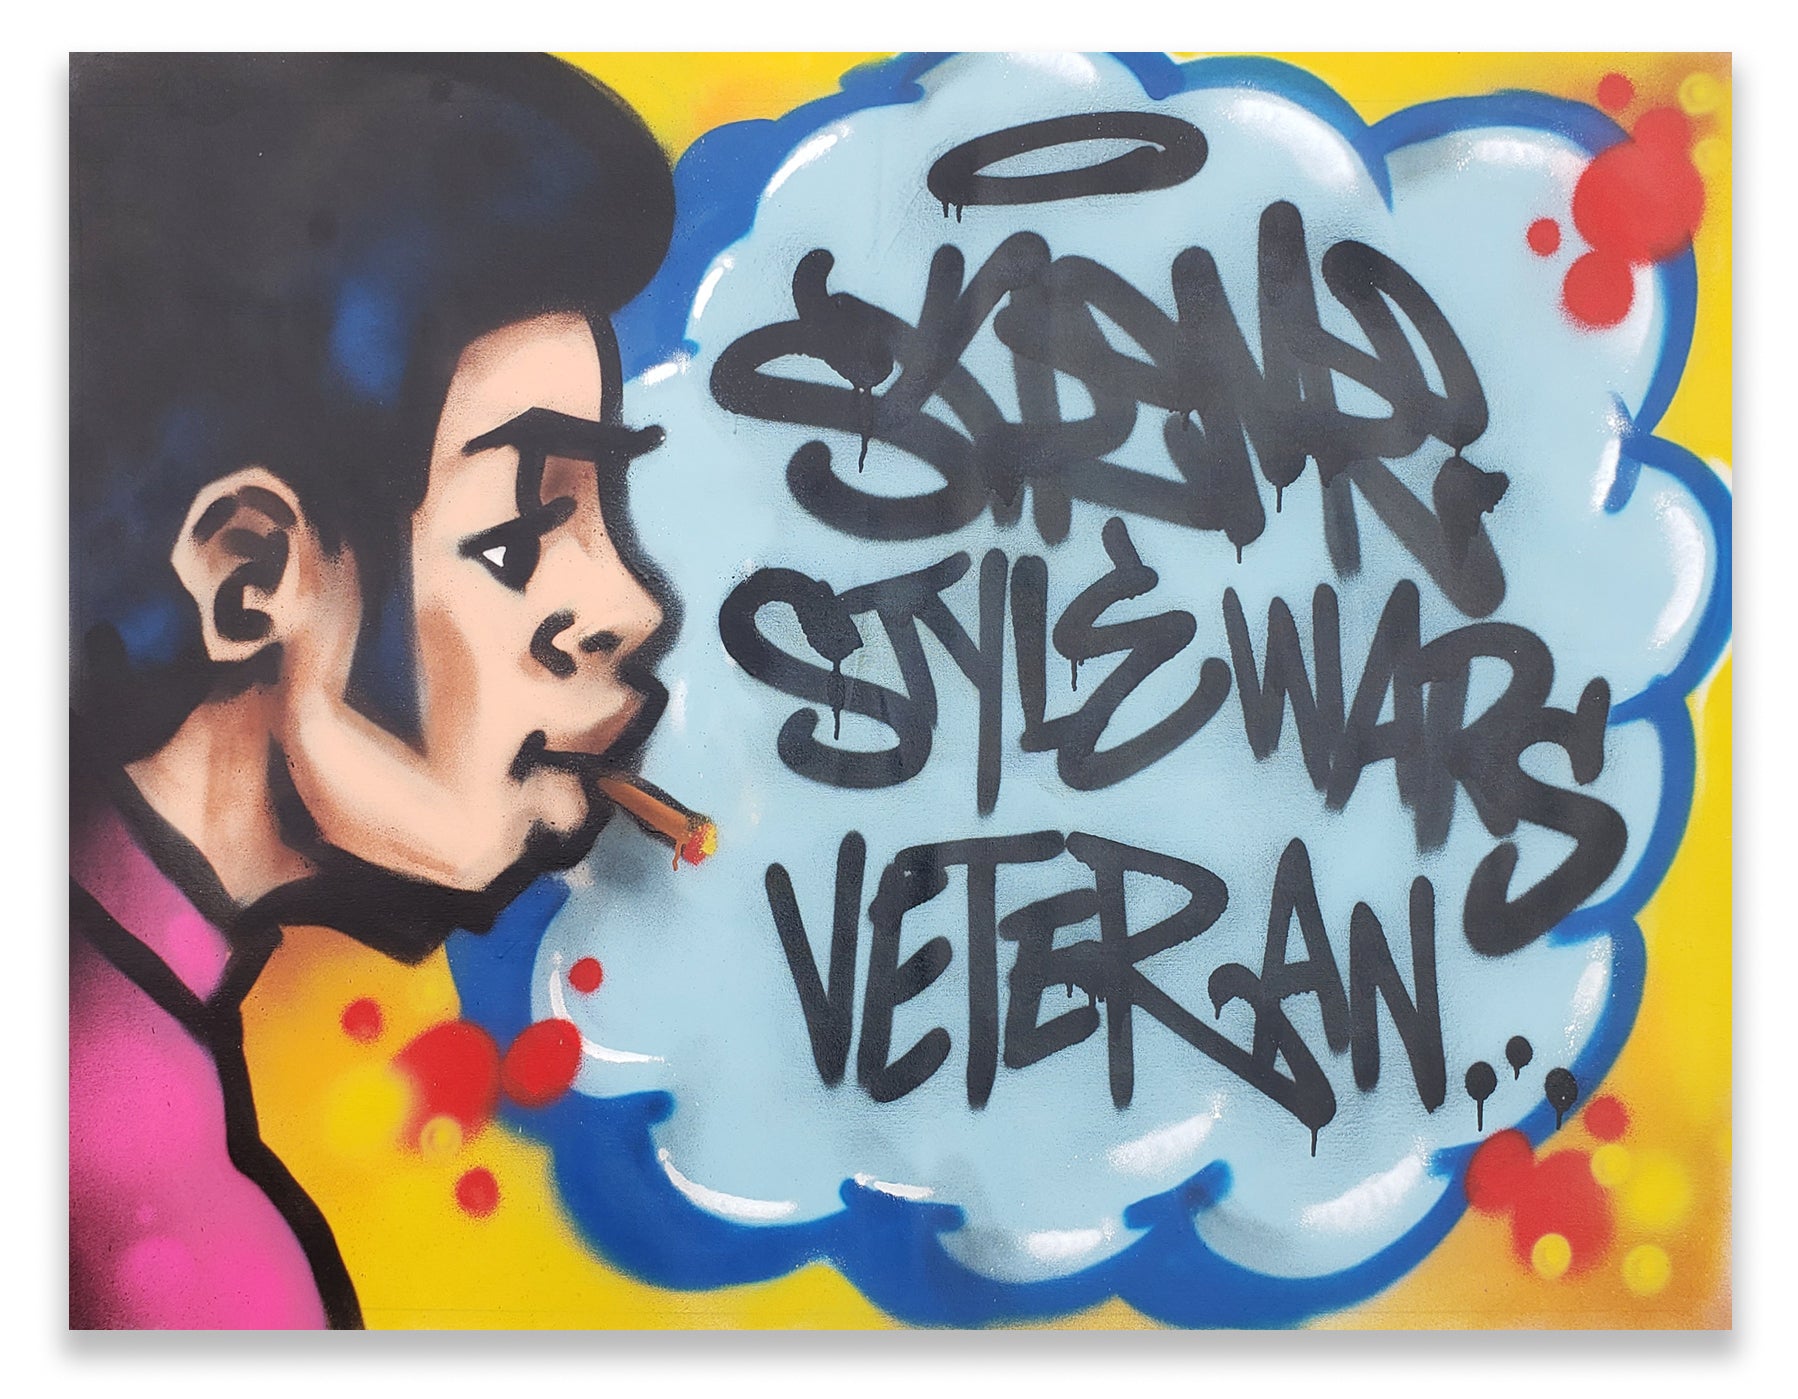 SKEME - "Style Wars Vet" Painting